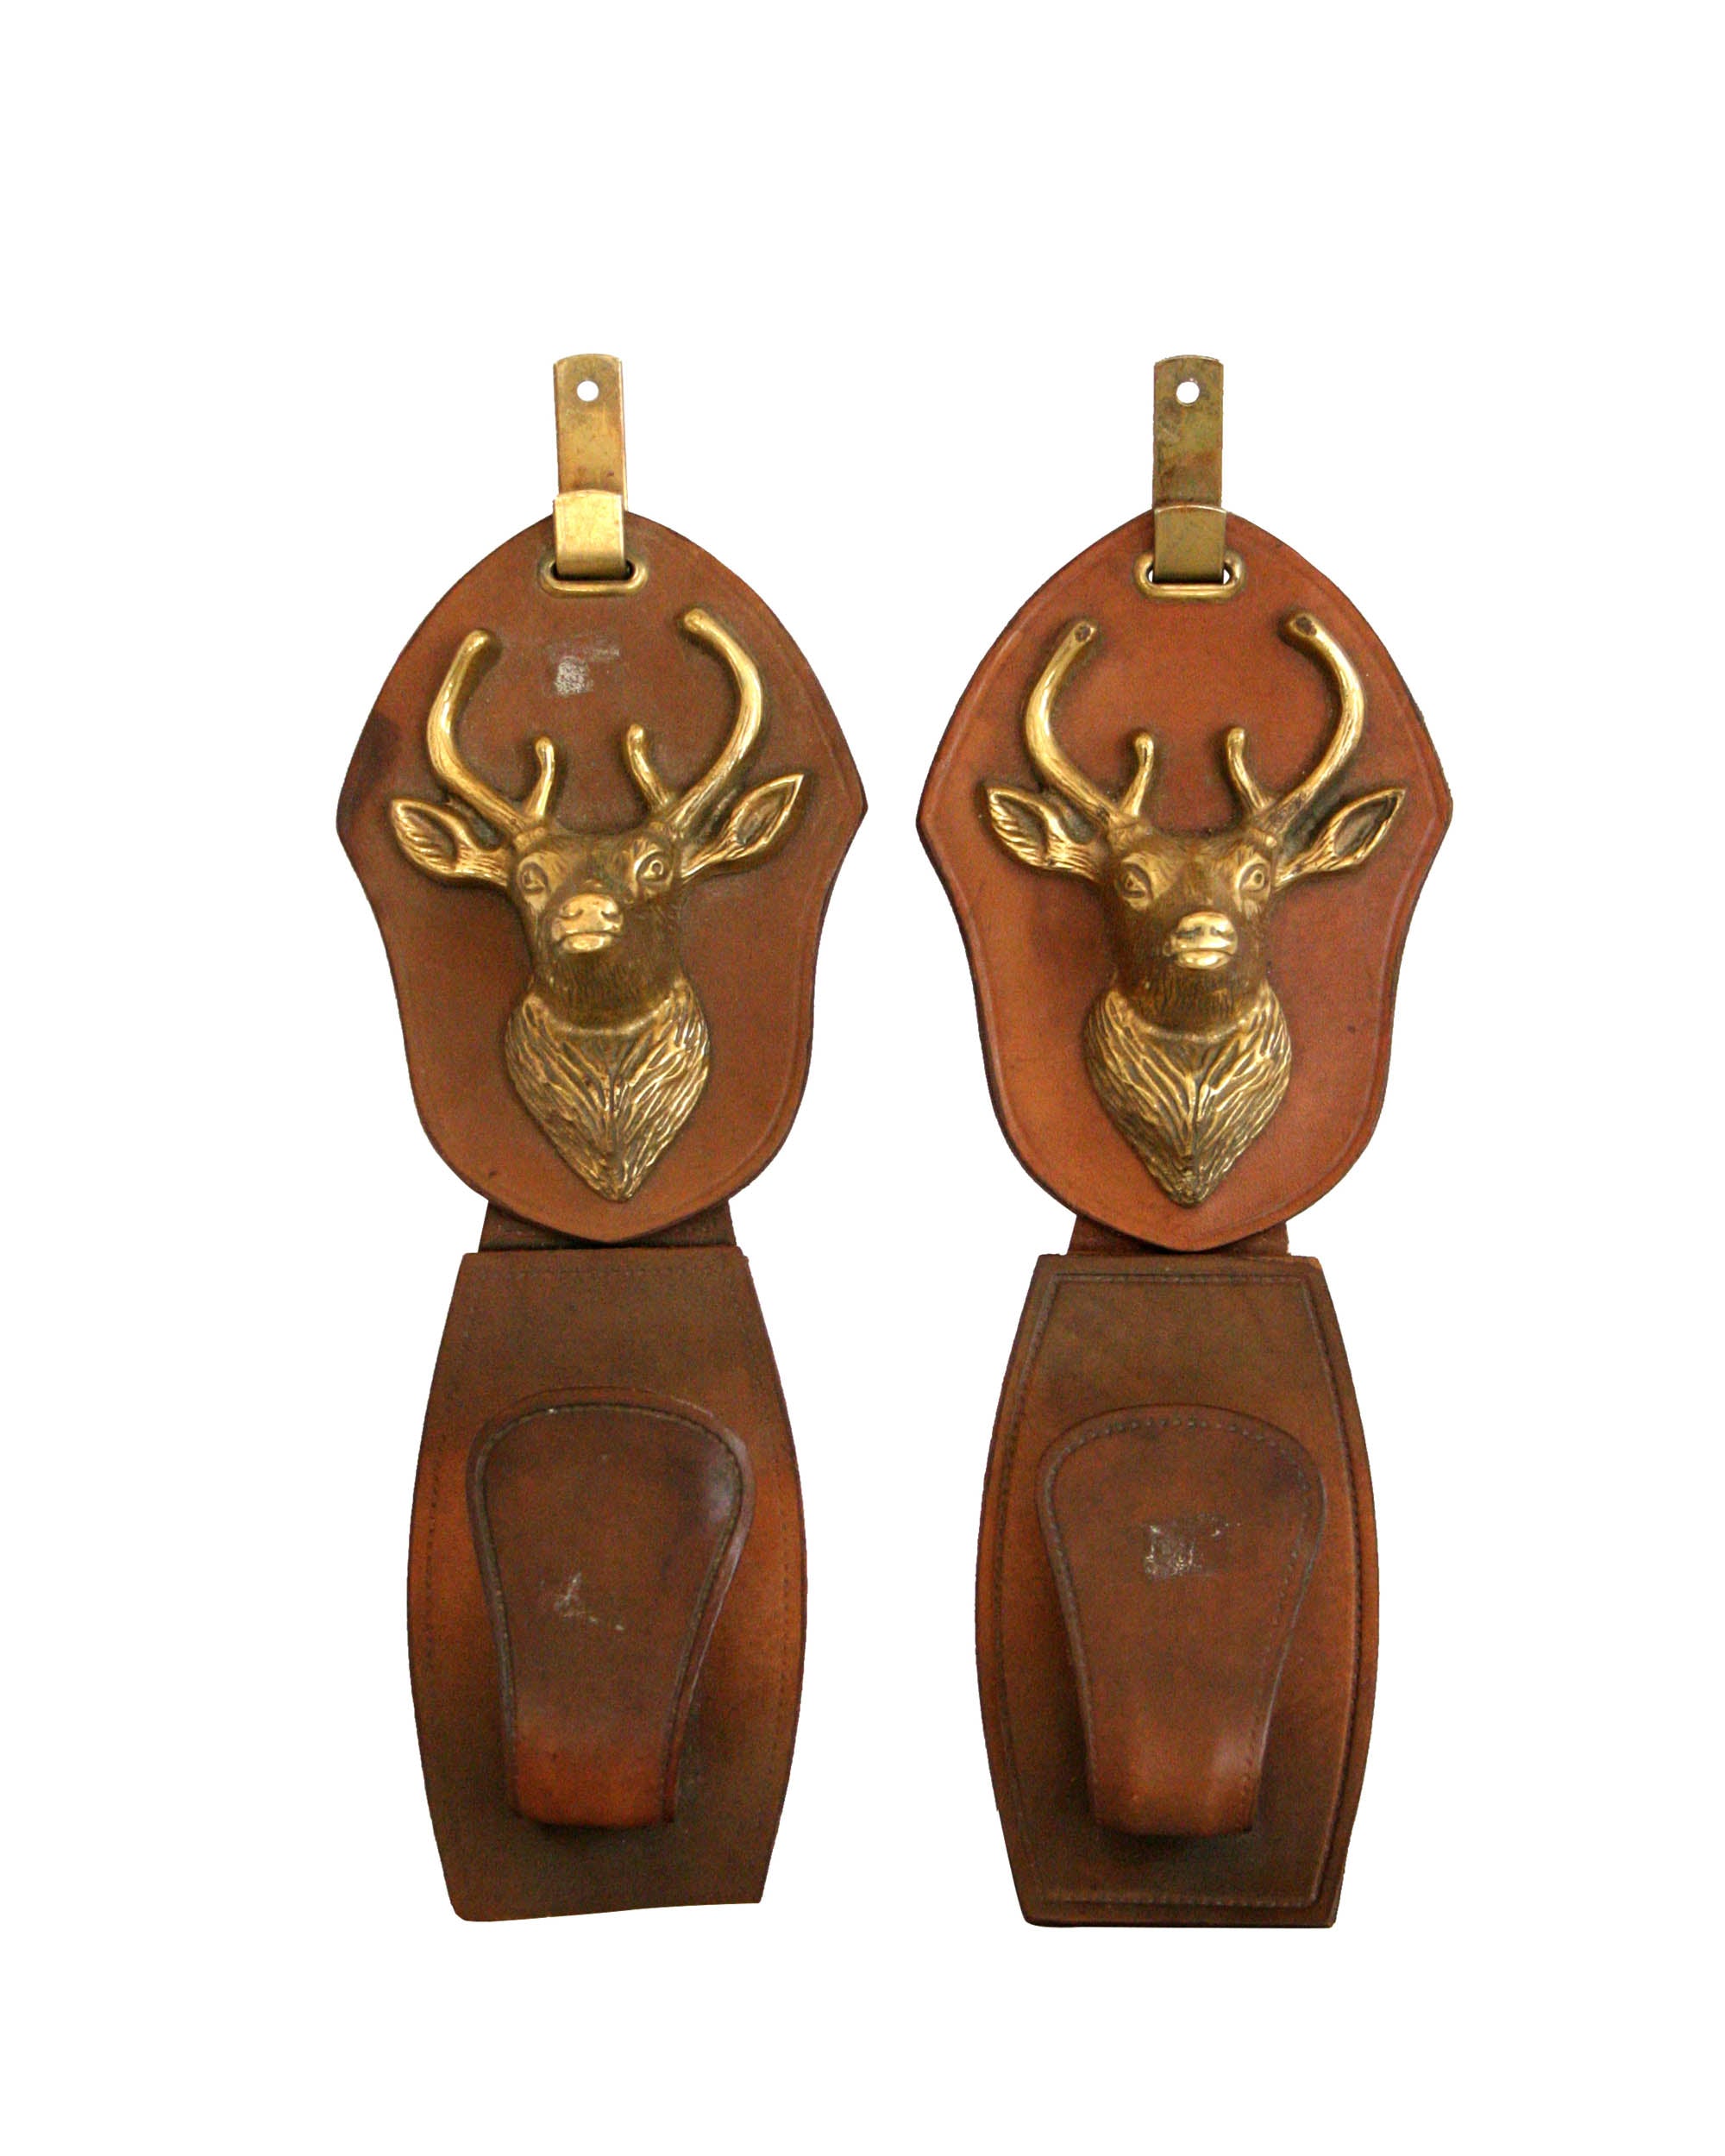 Couple de patères en cuir avec sculpture en forme de tête de cerf en bronze